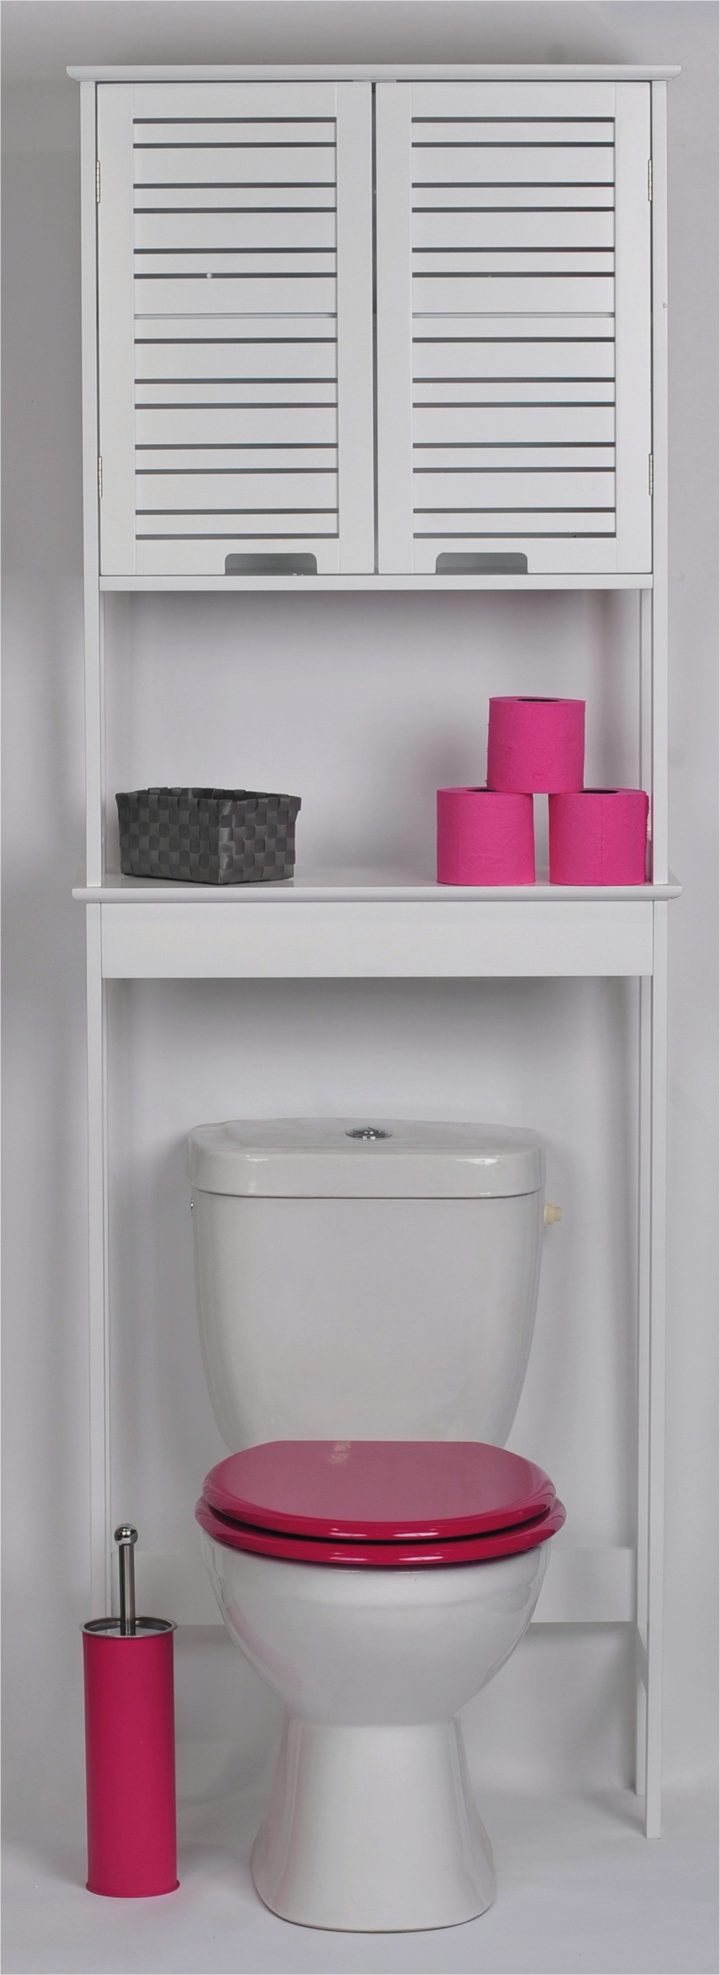 Meuble De Rangement Wc Meuble Sur Wc Meuble Papier Toilette intérieur Meuble Papier Toilette Ikea